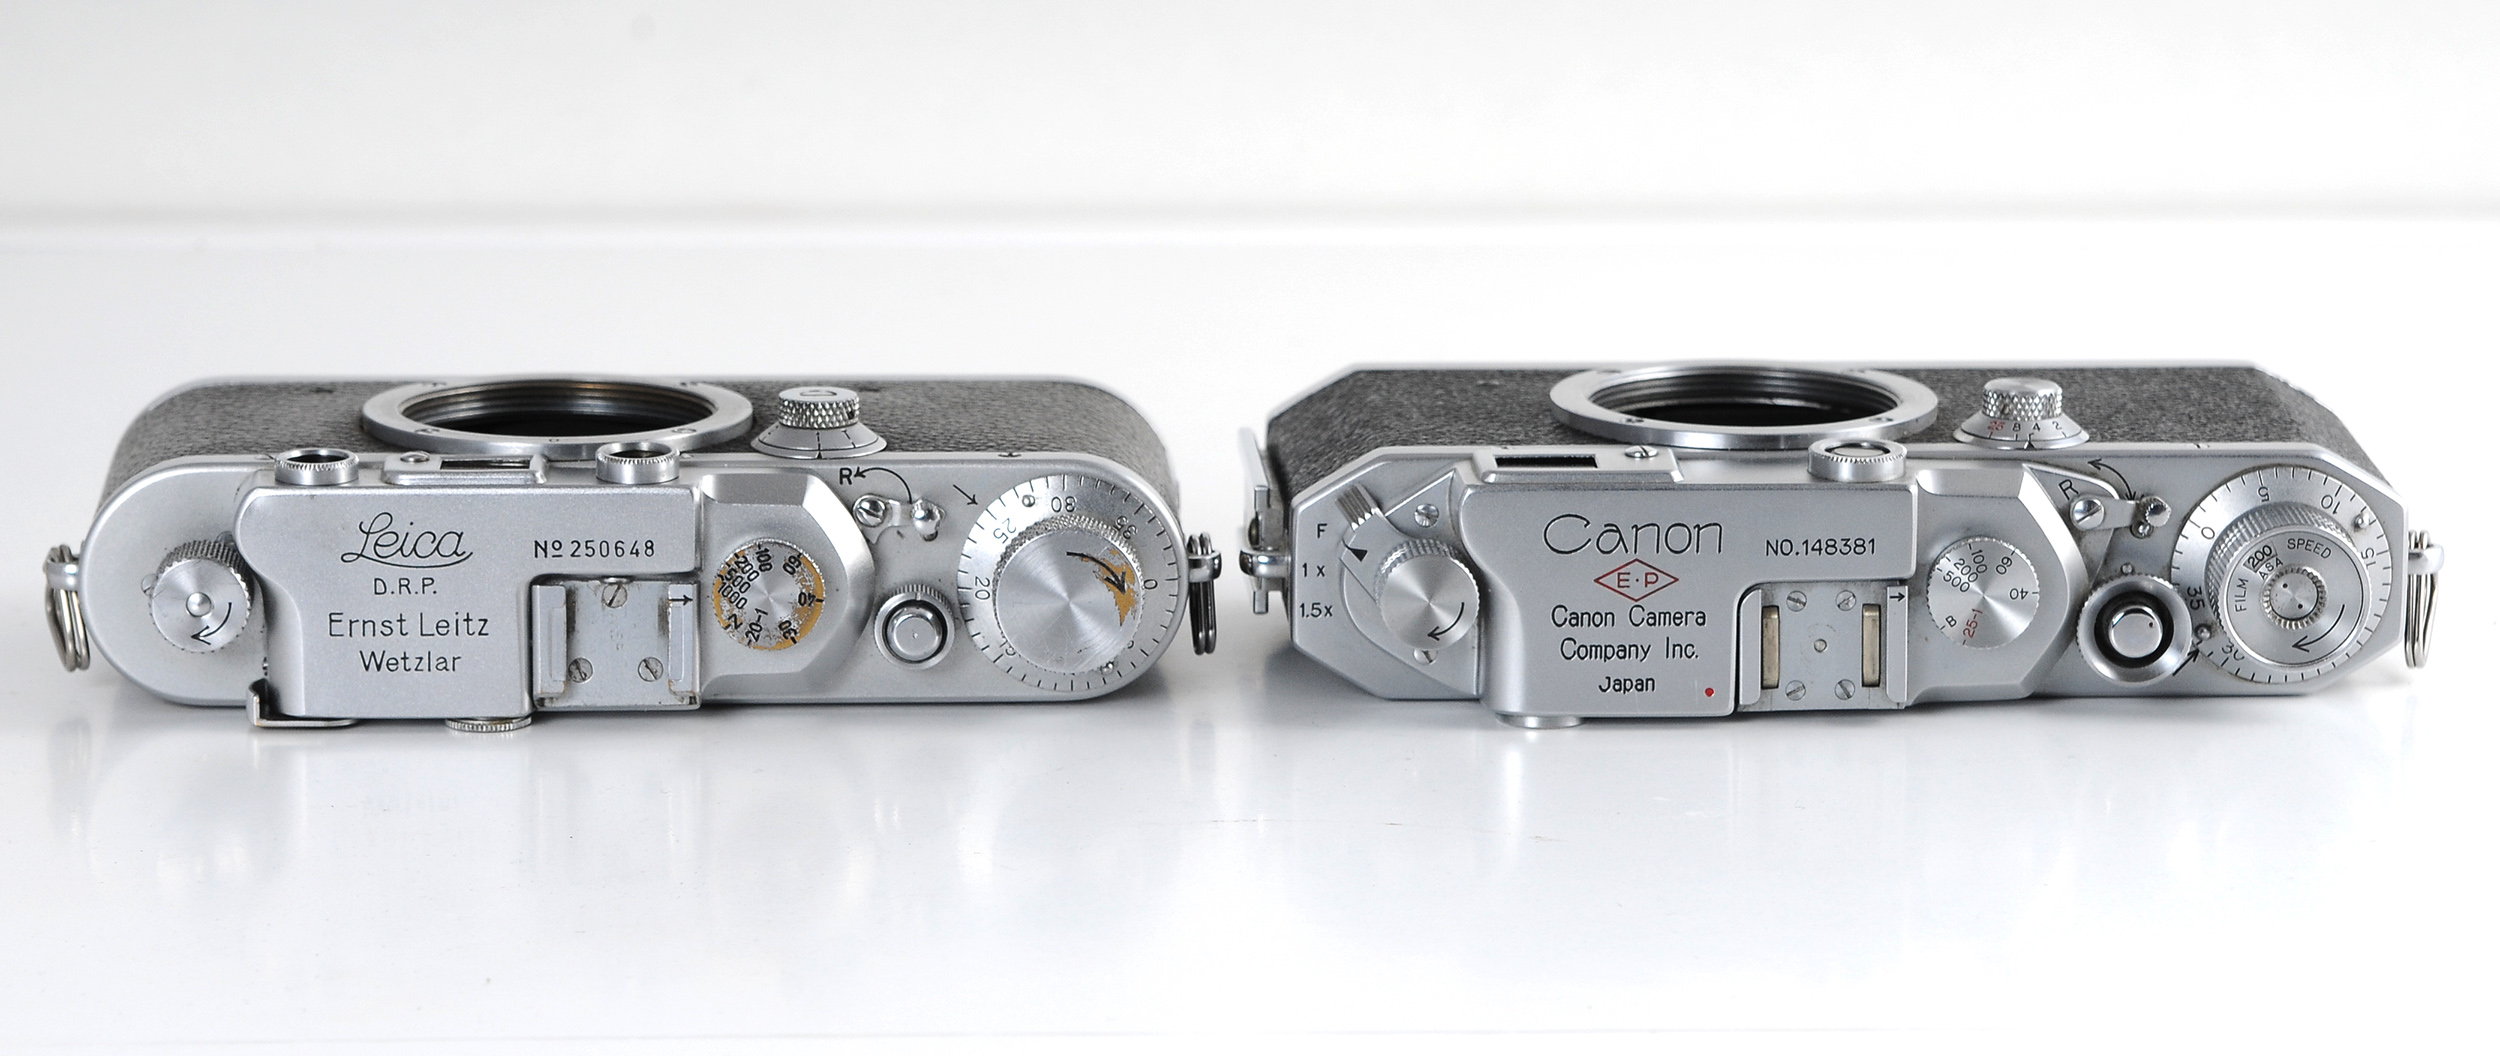 Leica Canon superior